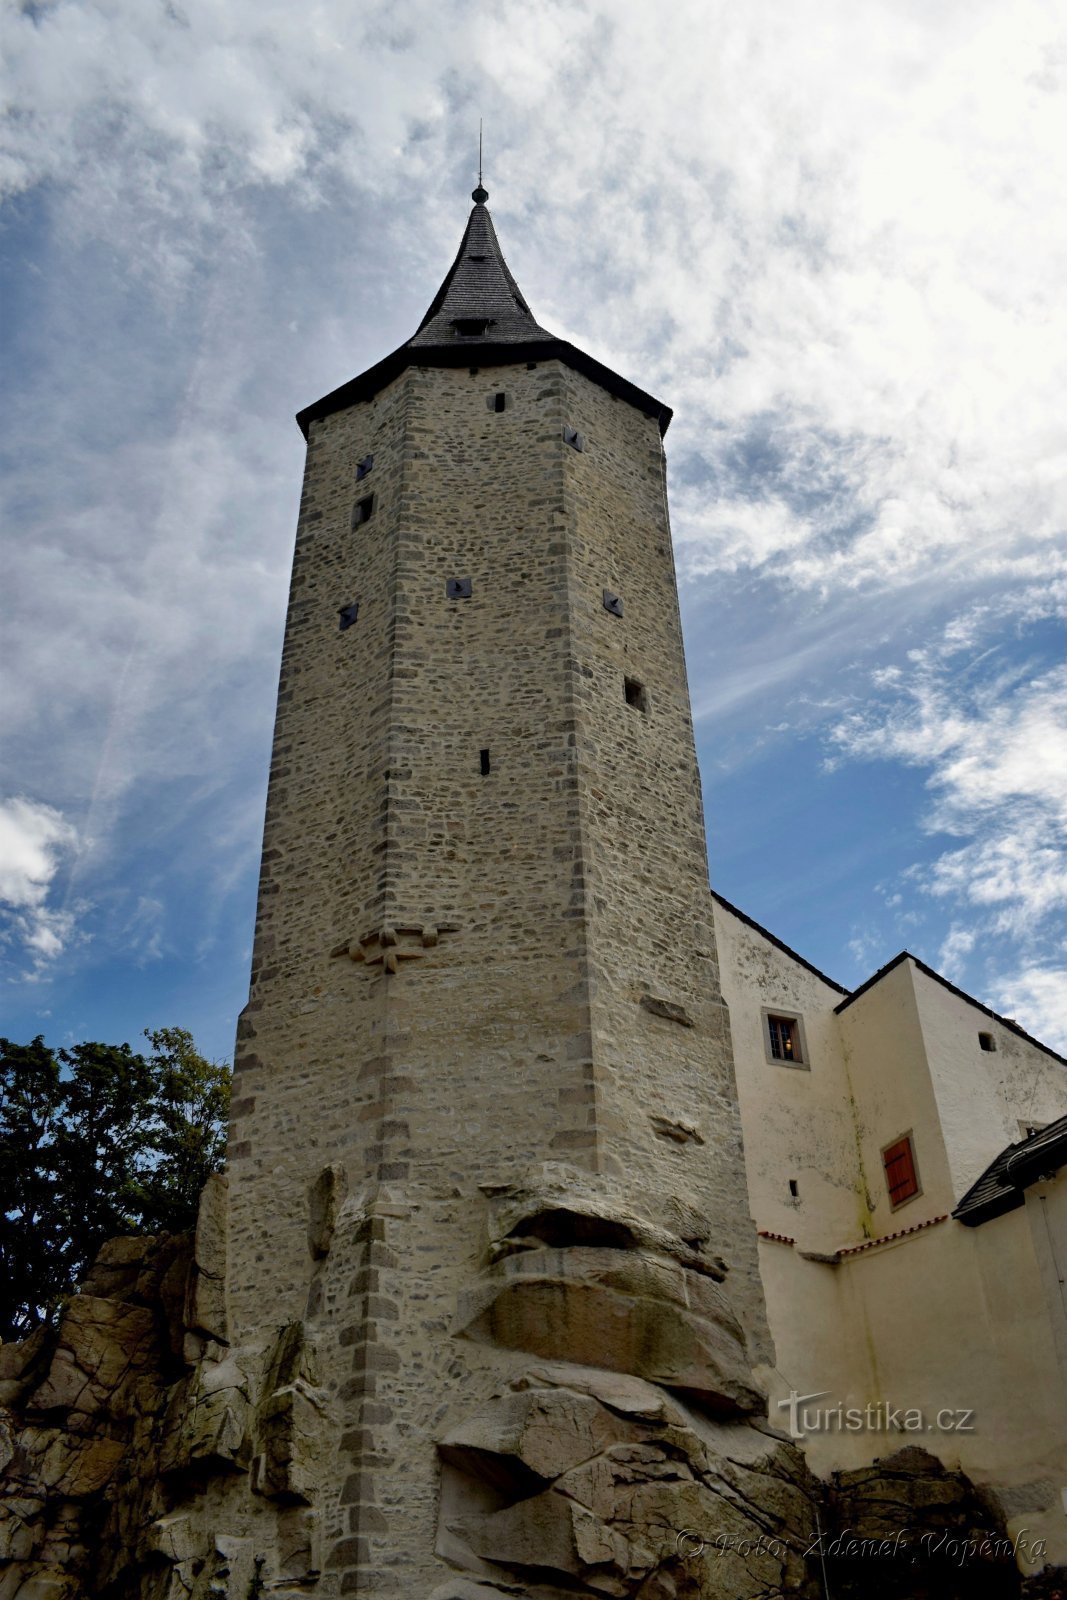 Torre del castillo de siete lados.